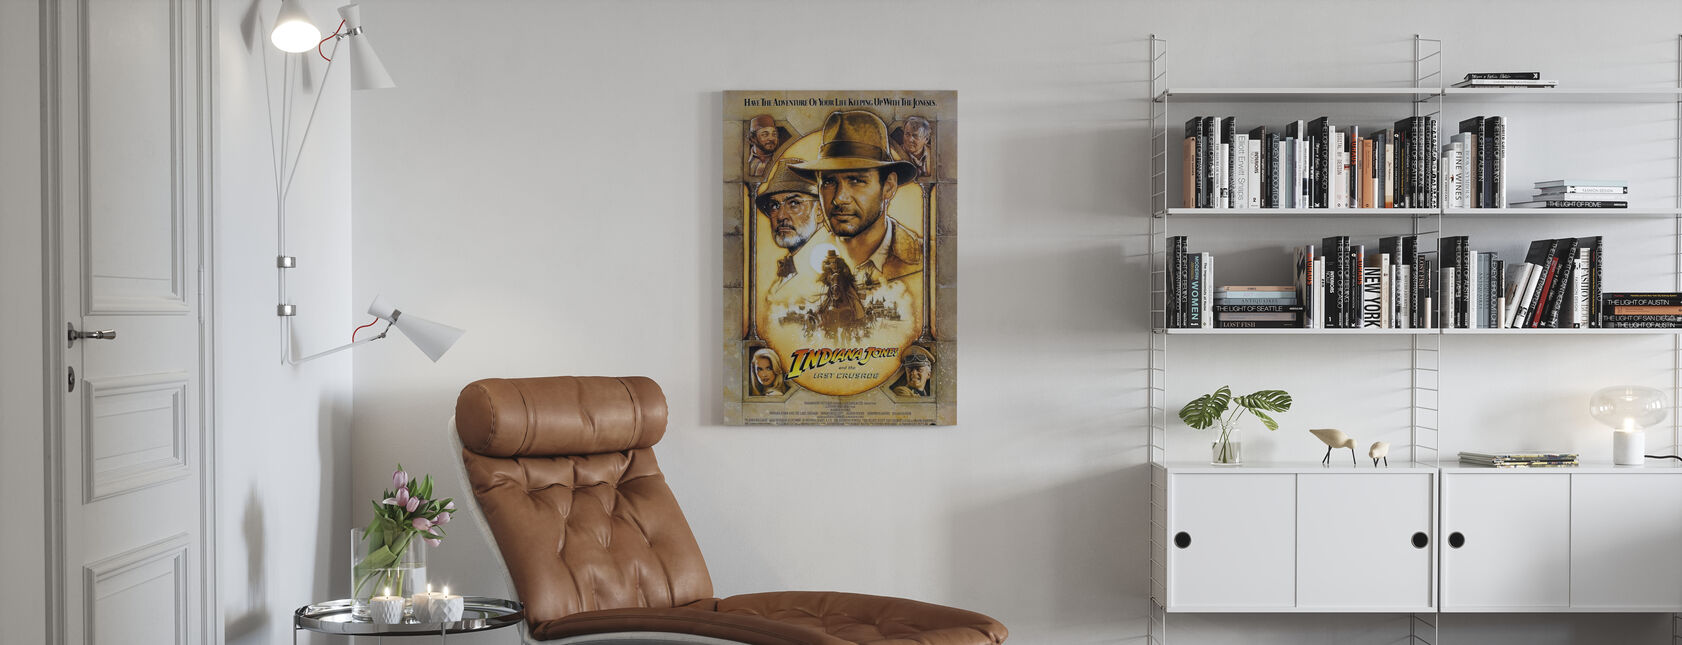 Indiana Jones ja viimeinen ristiretki - Canvastaulu - Olohuone